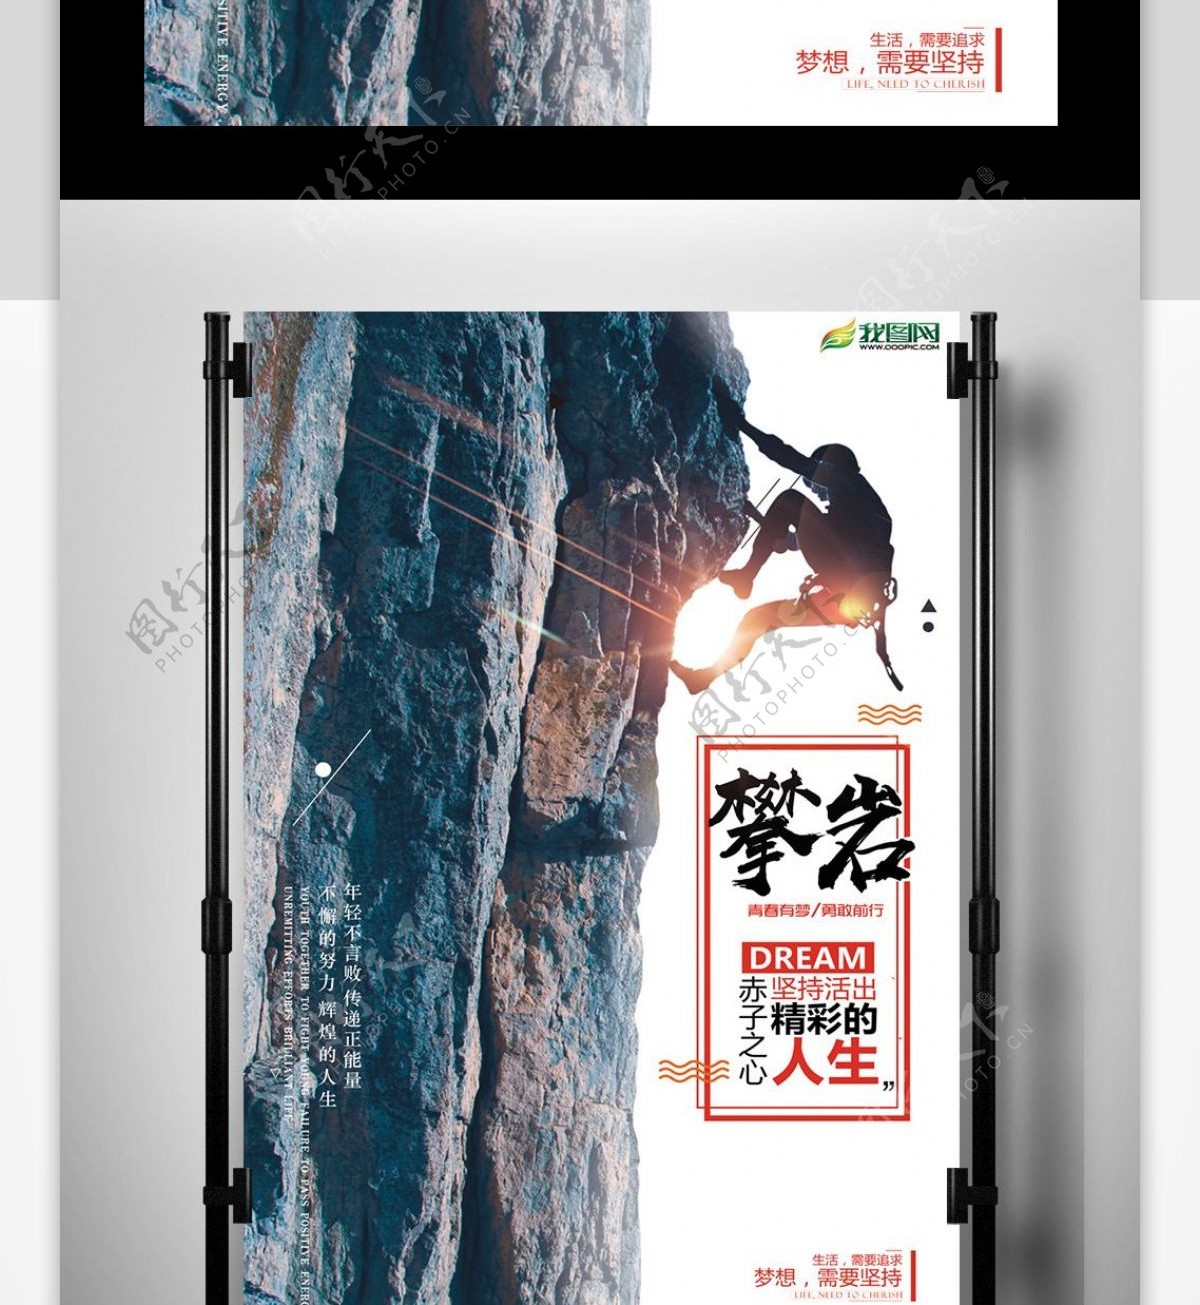 攀岩活动俱乐部宣传海报模板